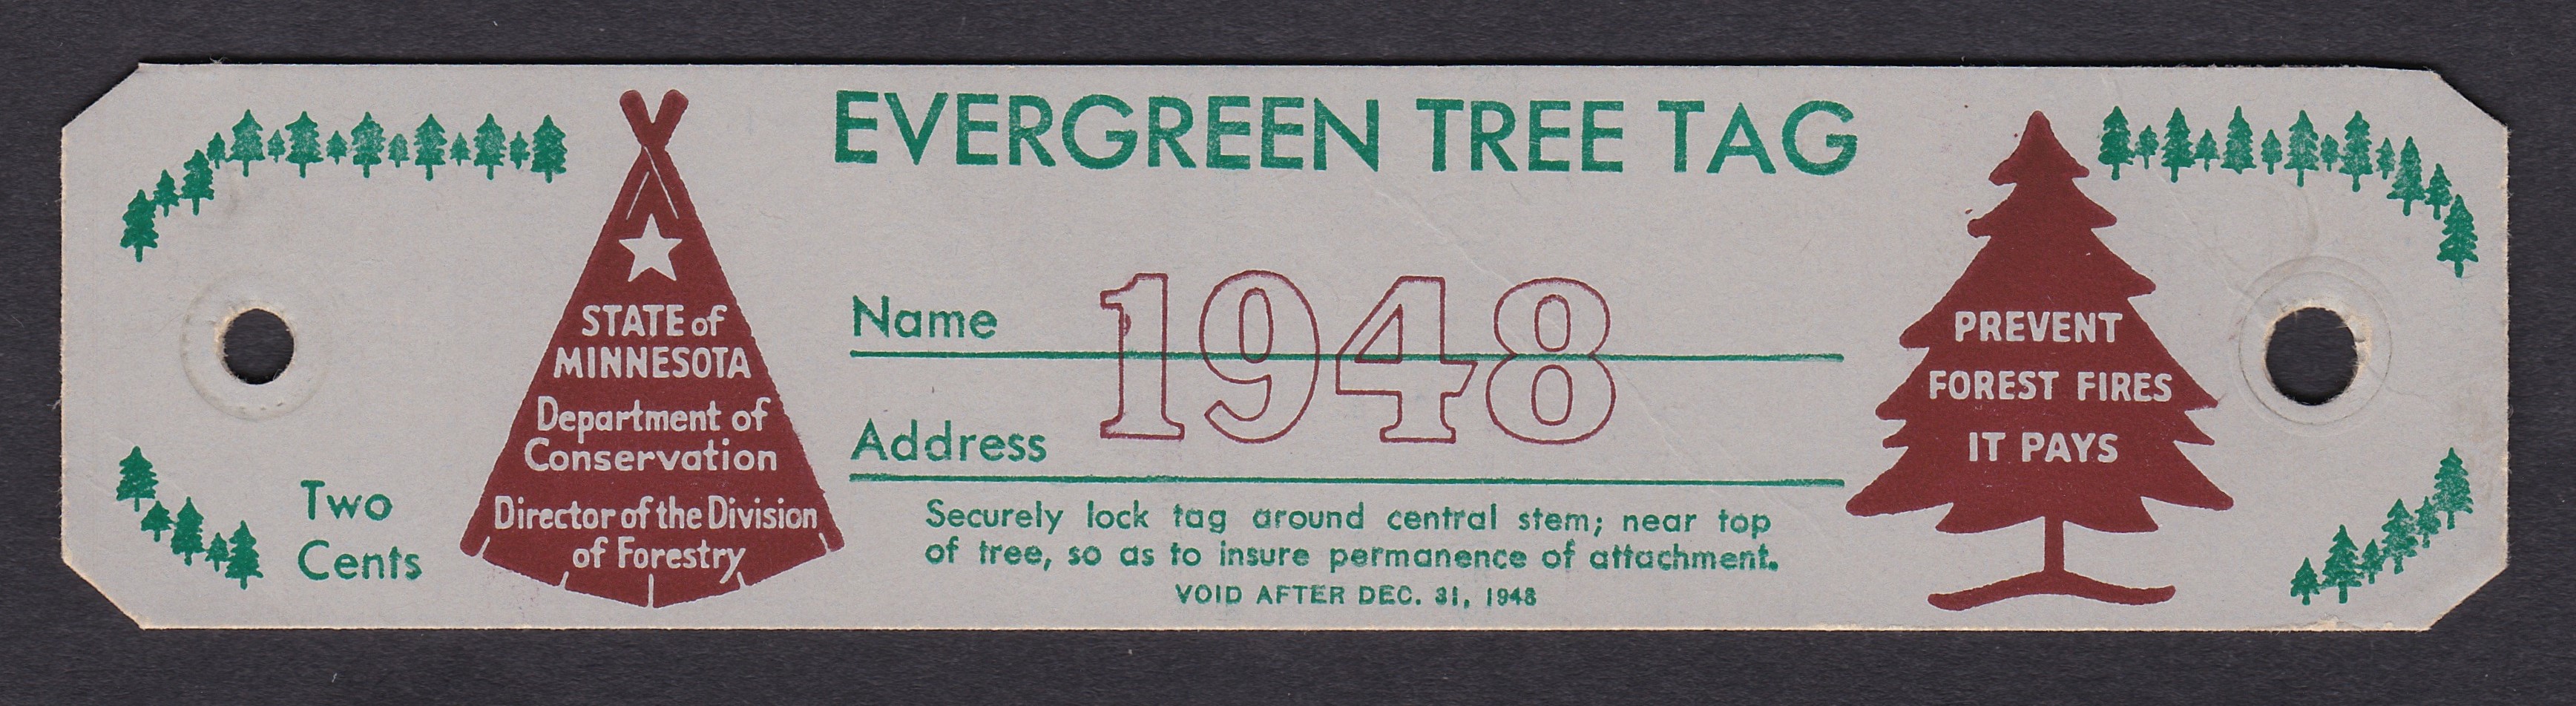 MN evergreen tree tag CT27 2c unused VF, 1948 P